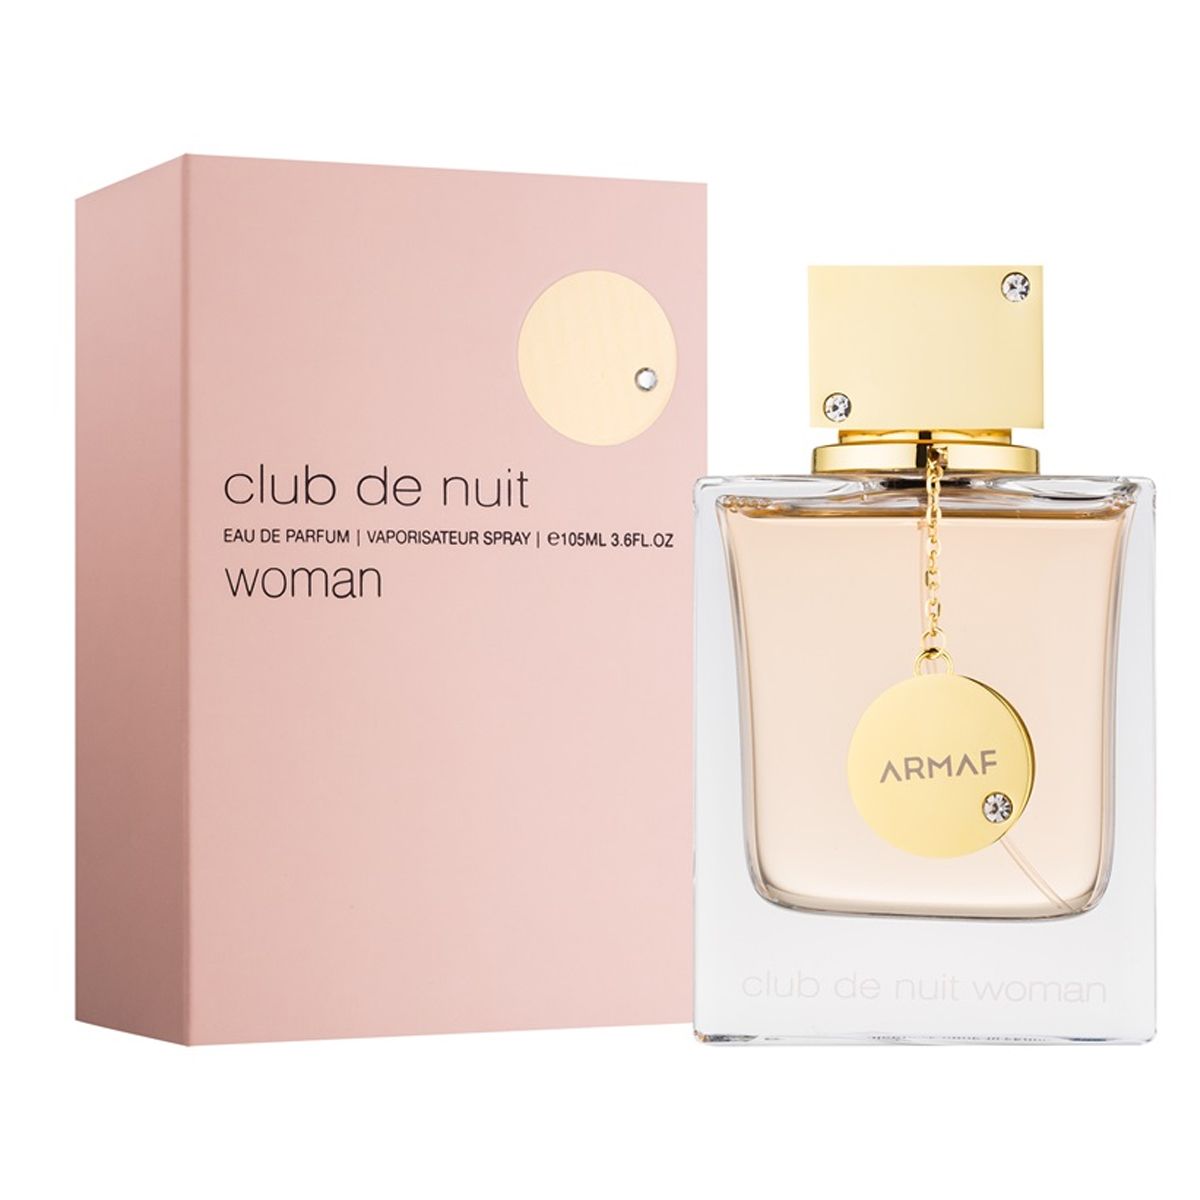 Total 69+ imagen perfume club de nuit woman precio